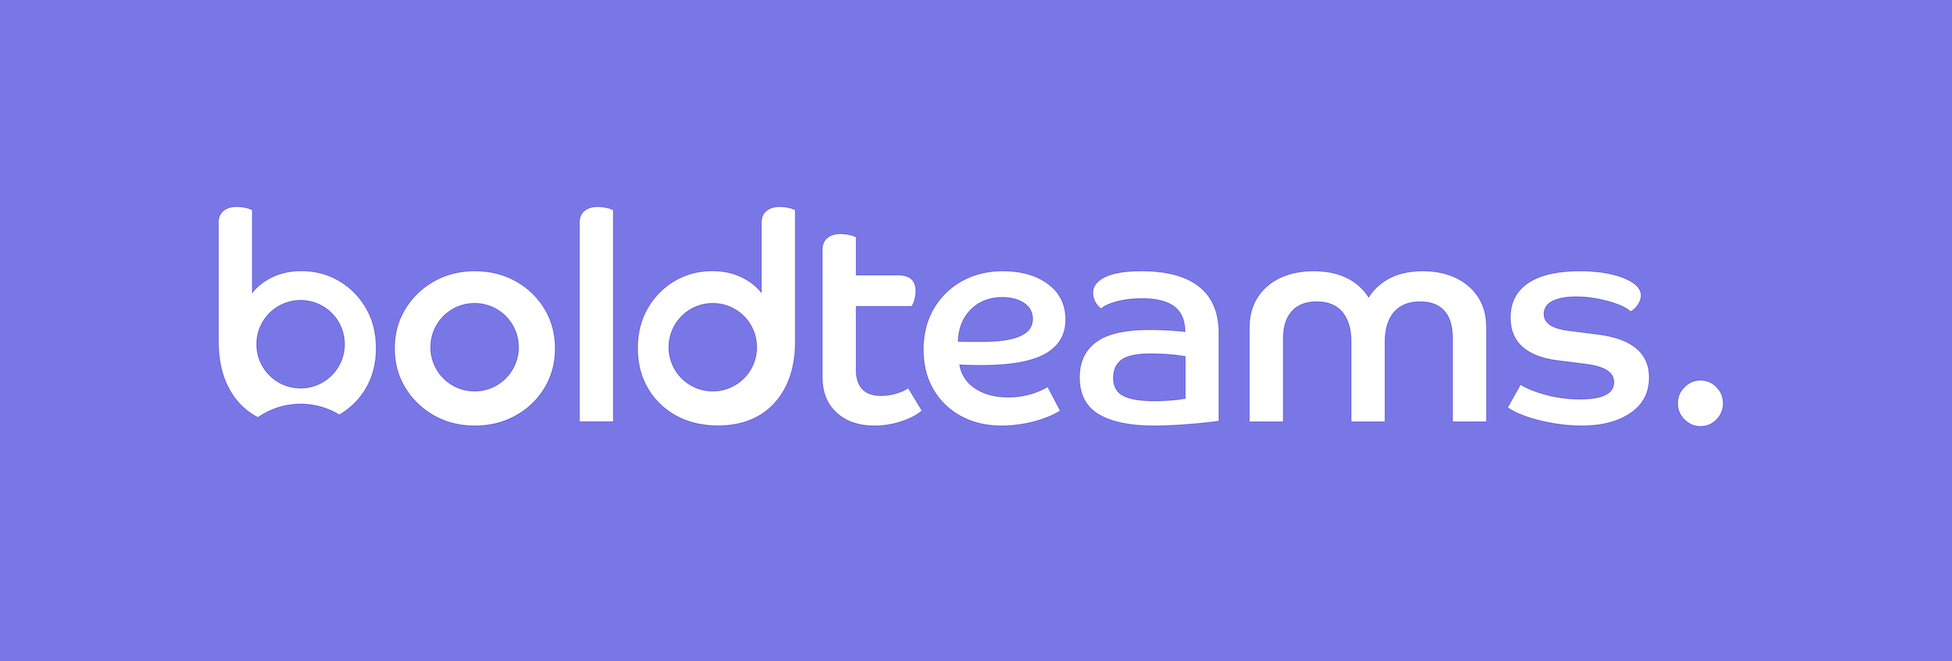 Boldteams logo